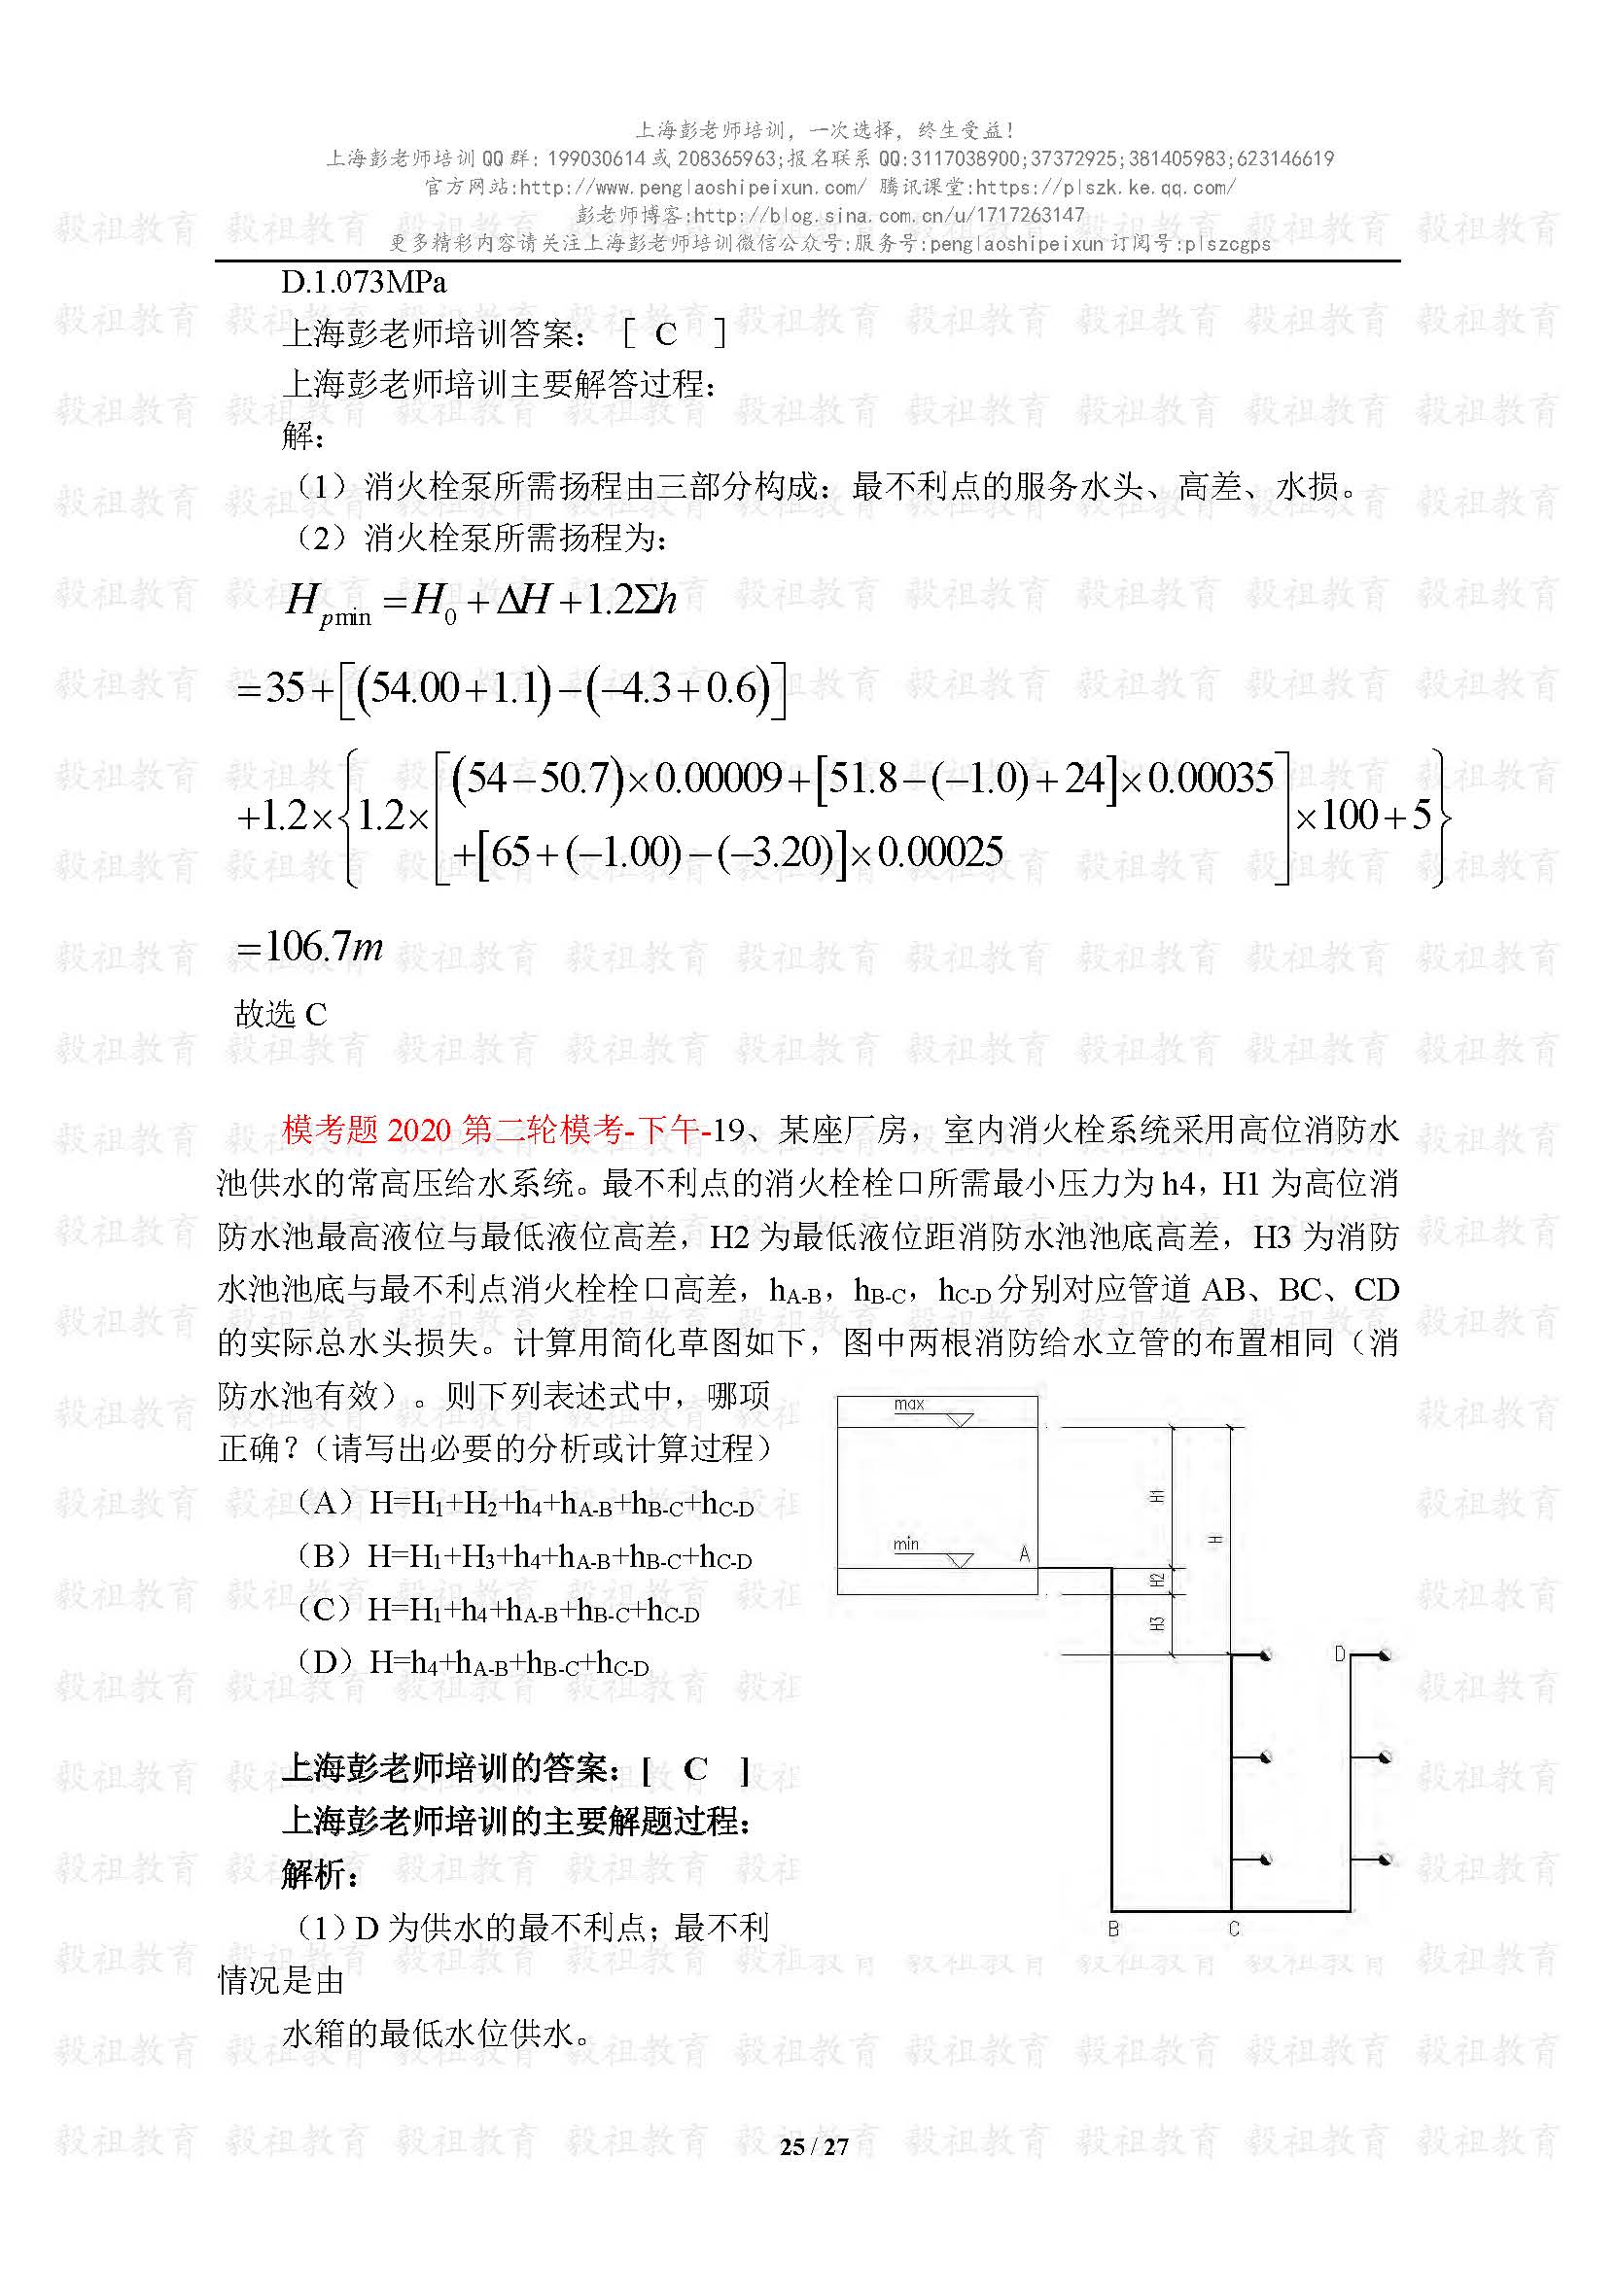 2020注册给排水考试真题与模考题相似度分析-上海彭老师培训_页面_25.jpg.jpg